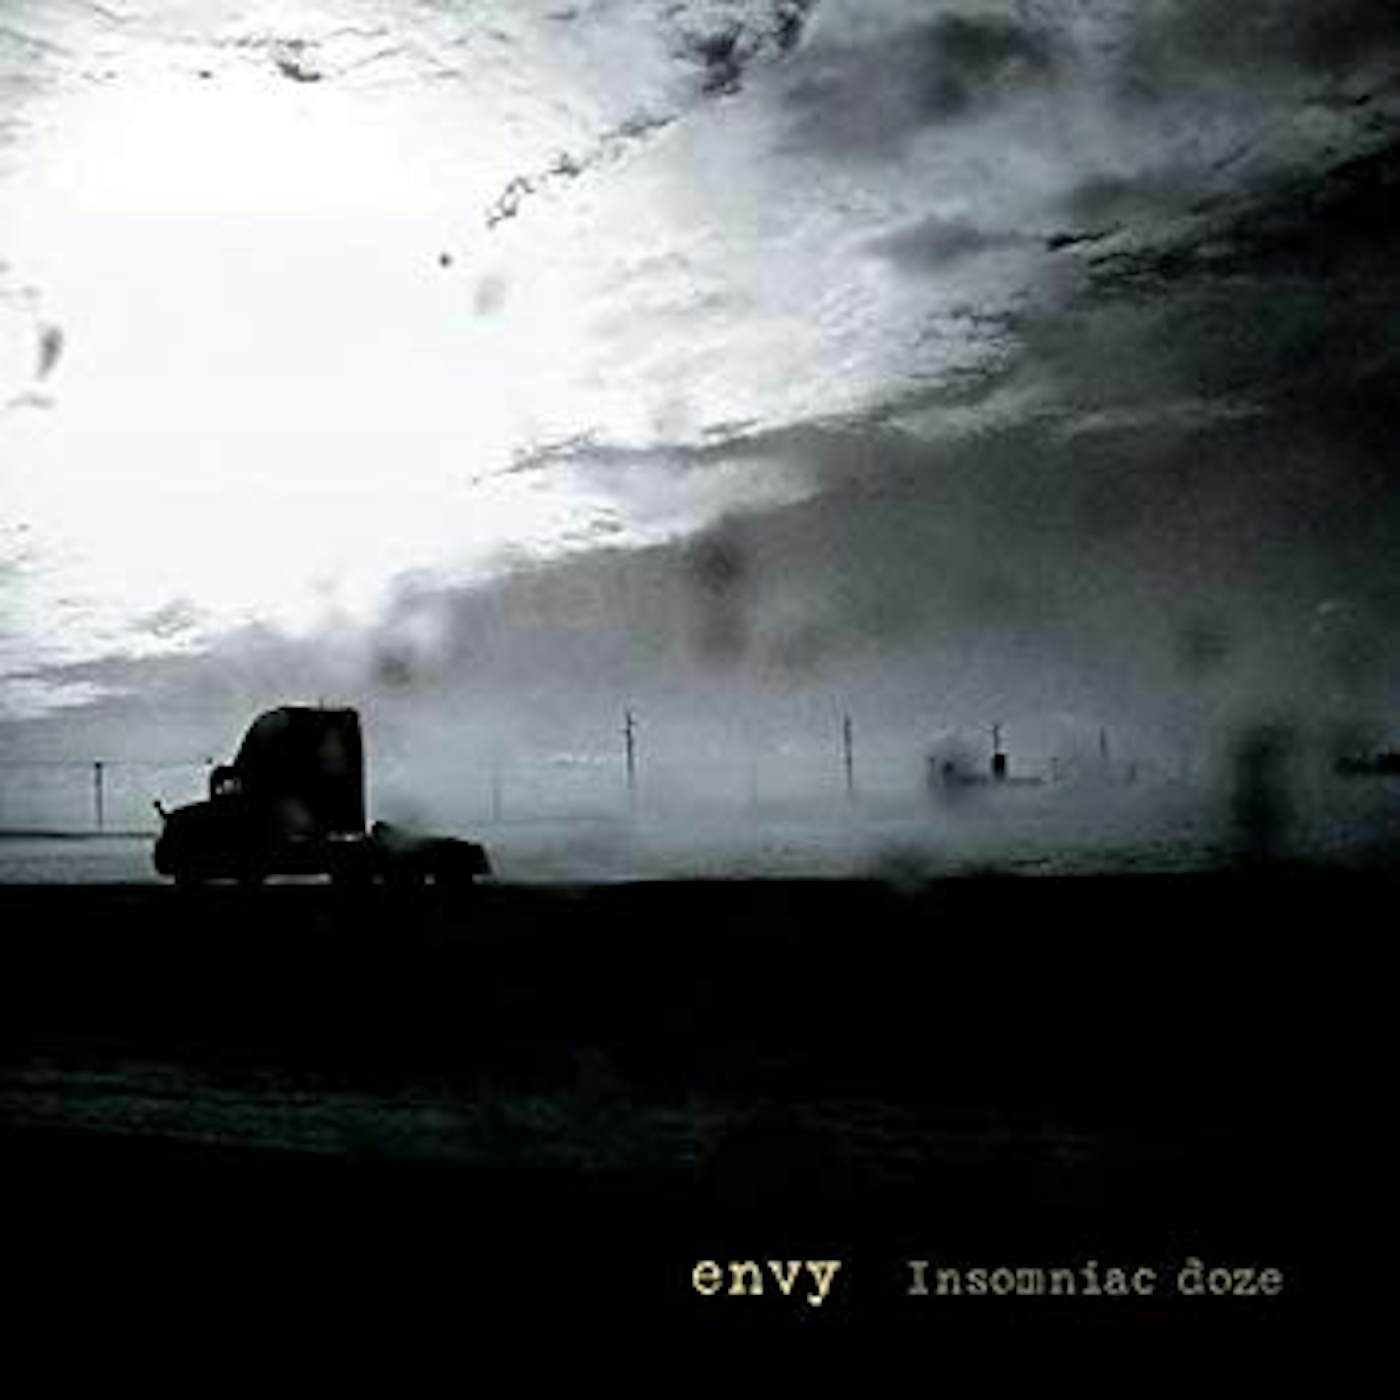 Envy Insomniac Doze Vinyl Record